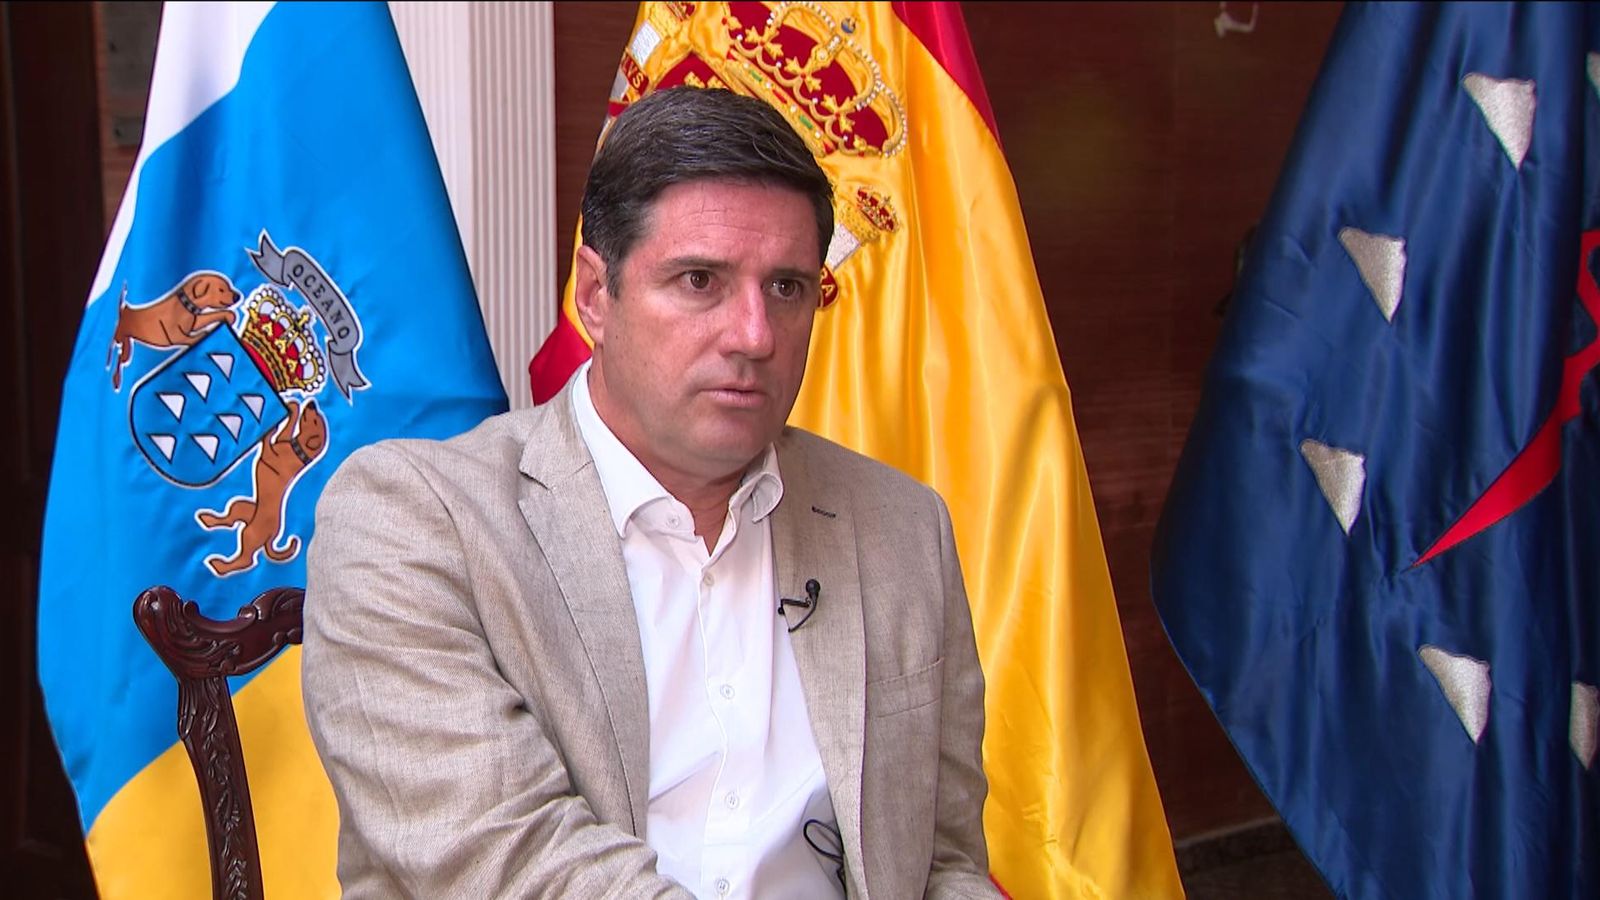 Jay Slater : L’enquête sur la disparition se poursuit, insiste le maire de Tenerife | UK News